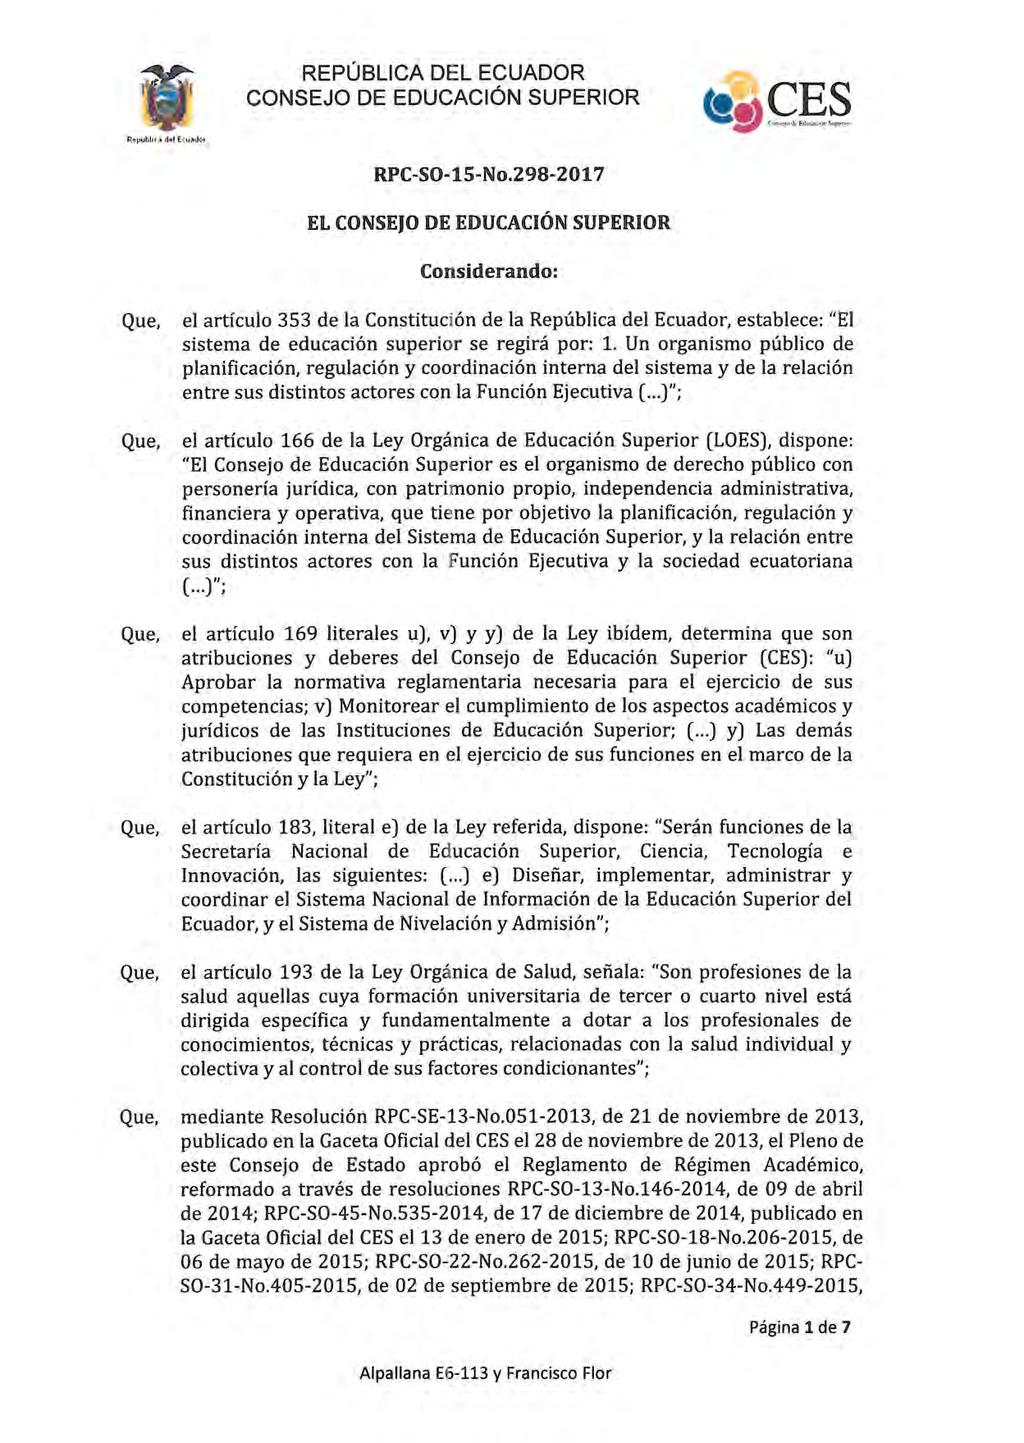 RPC-SO-15-No.298-2017 EL CONSEJO DE EDUCACIÓN SUPERIOR Considerando: el artículo 353 de la Constitución de la República del Ecuador, establece: "El sistema de educación superior se regirá por: 1.